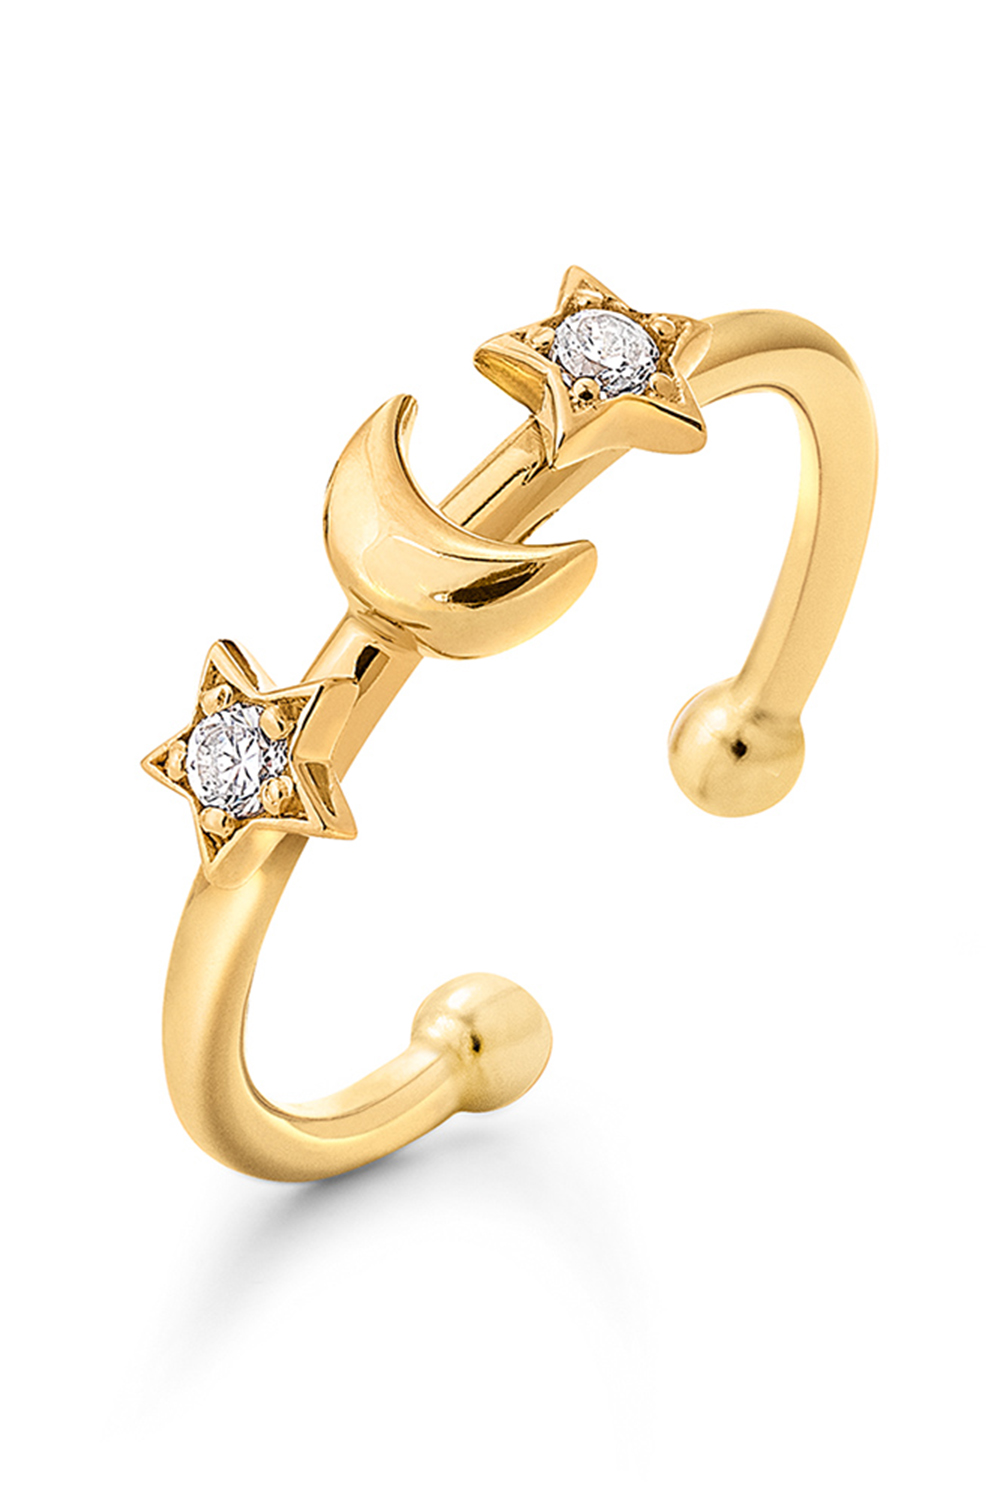 Γυναικεία/Αξεσουάρ/Κοσμήματα/Δαχτυλίδια FOLLI FOLLIE - Γυναικείο ασημένιο δαχτυλίδι FOLLI FOLLIE WISHING ON χρυσό